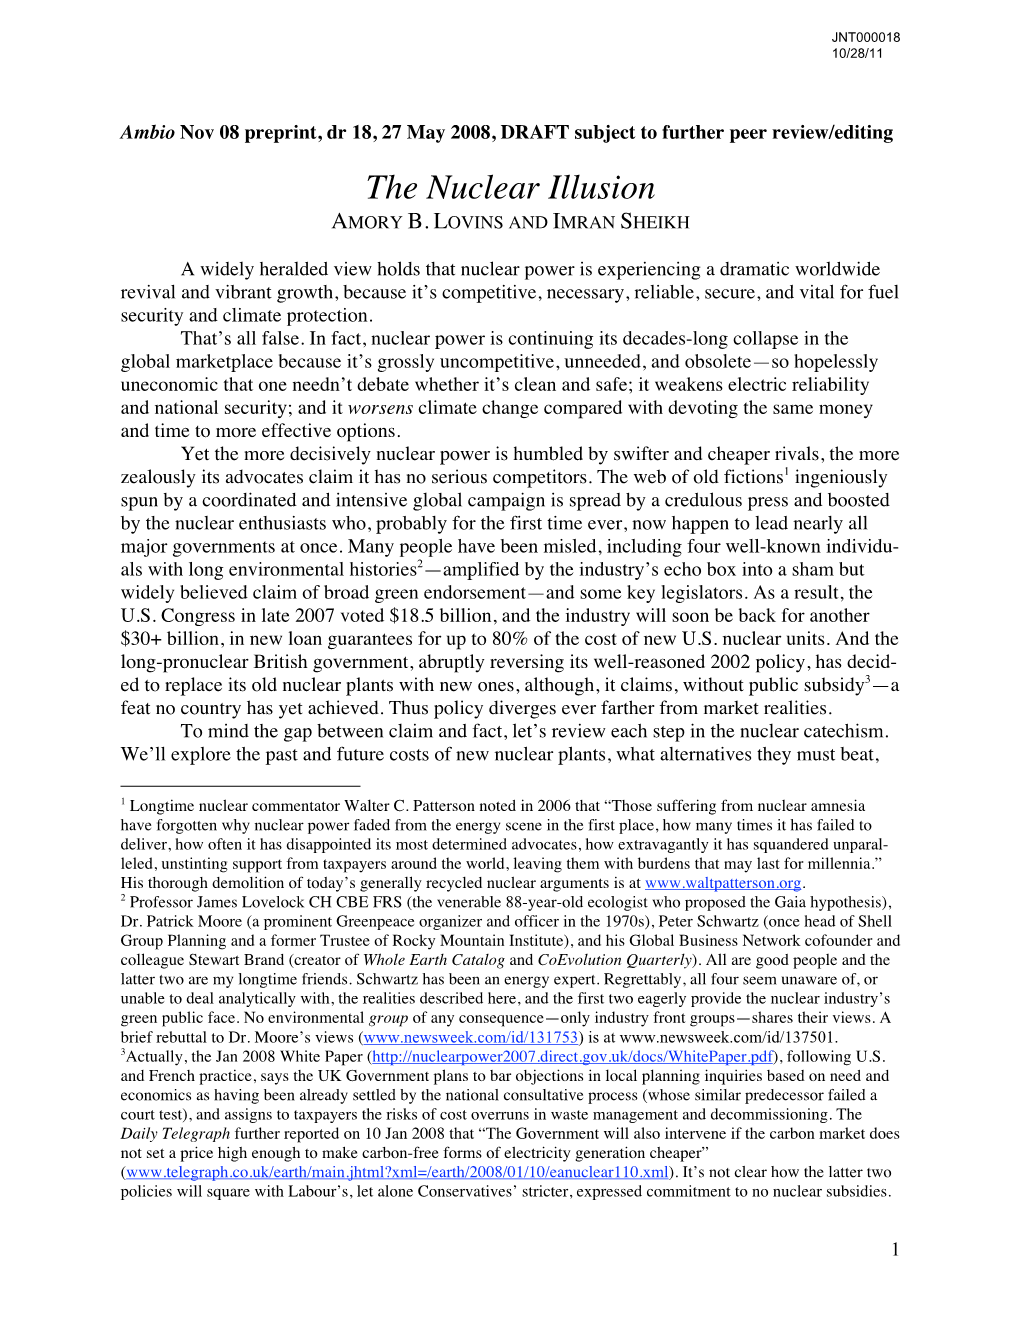 "The Nuclear Illusion," Ambio Nov 08 Prepr